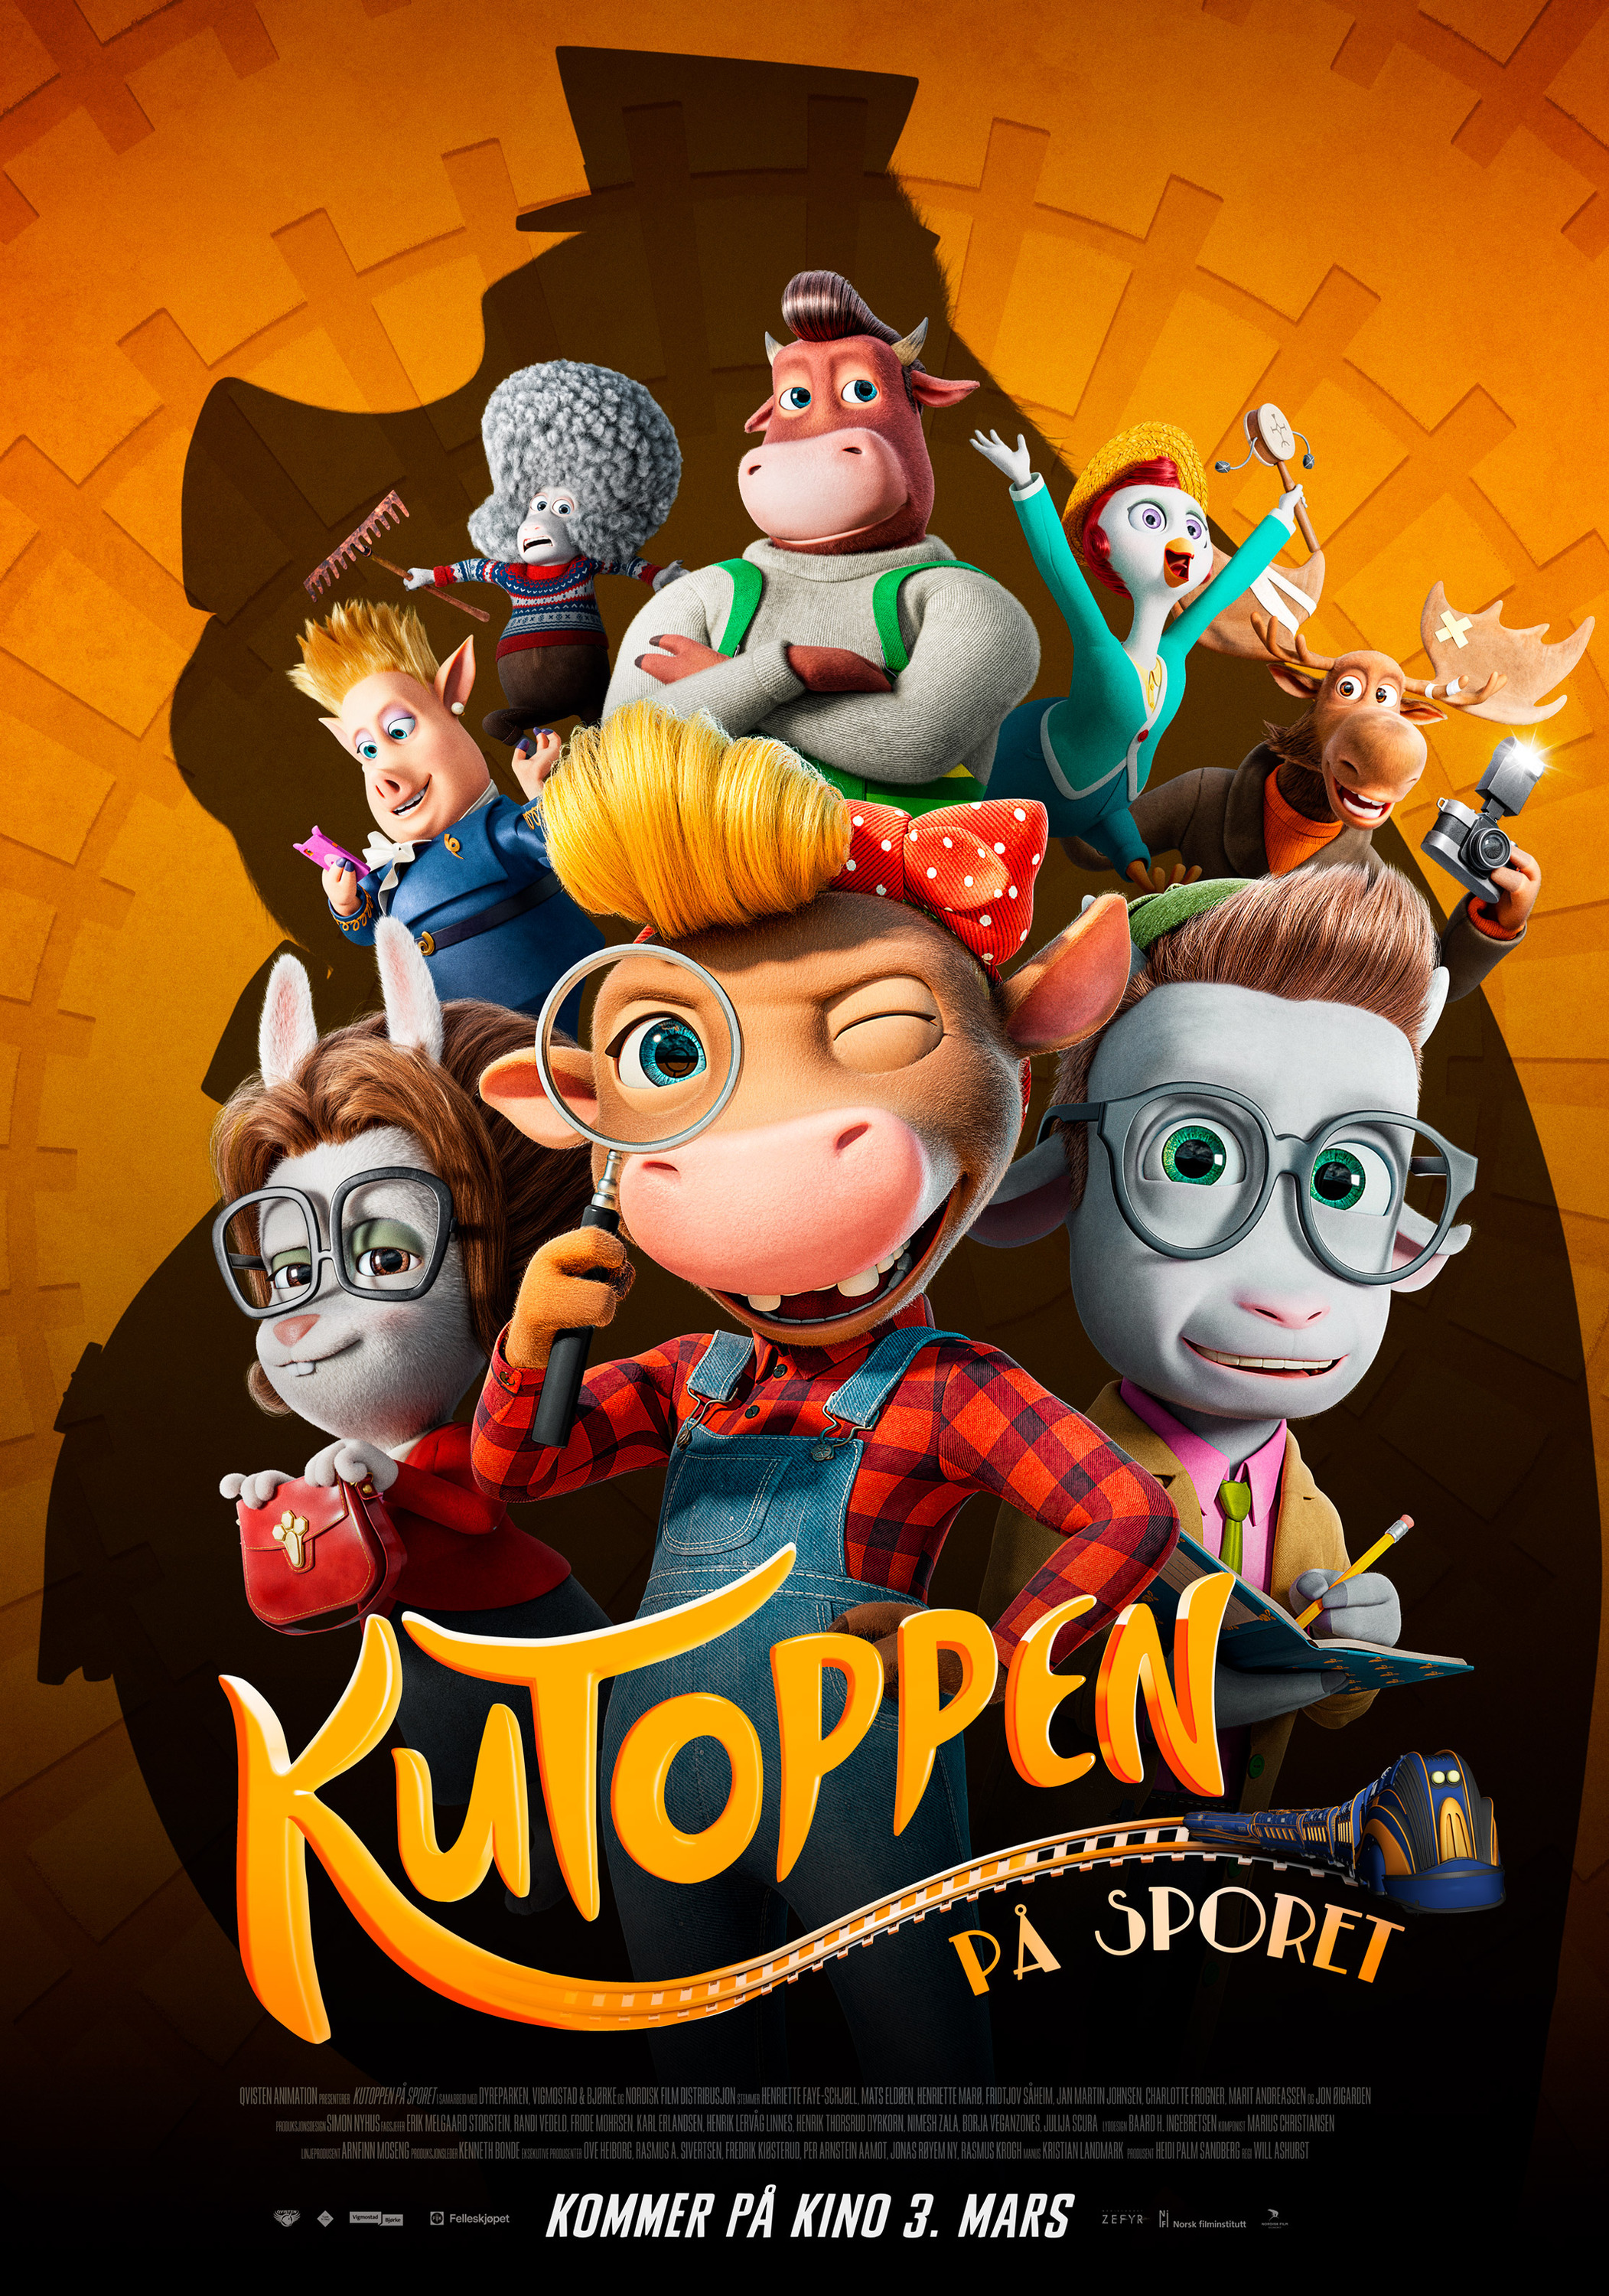 Mega Sized Movie Poster Image for Kutoppen - På sporet 